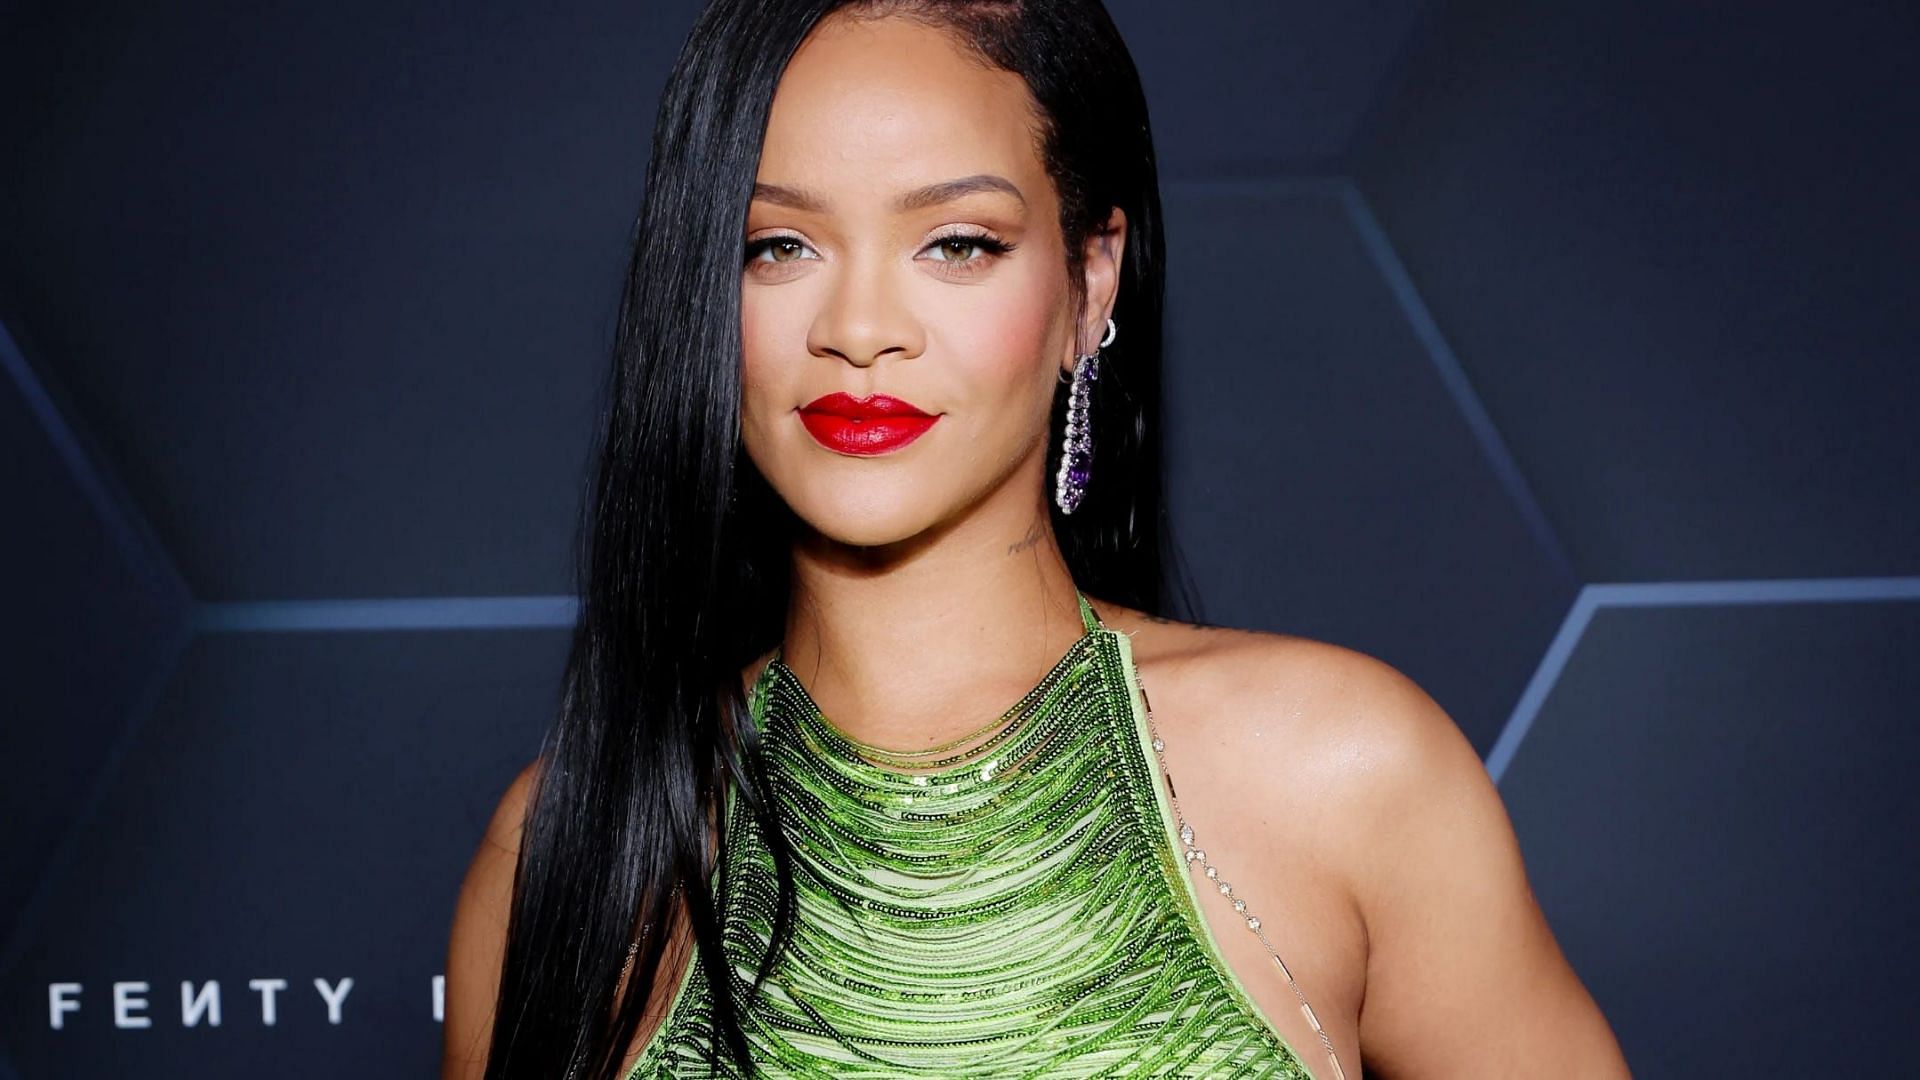 Pop singer Rihanna